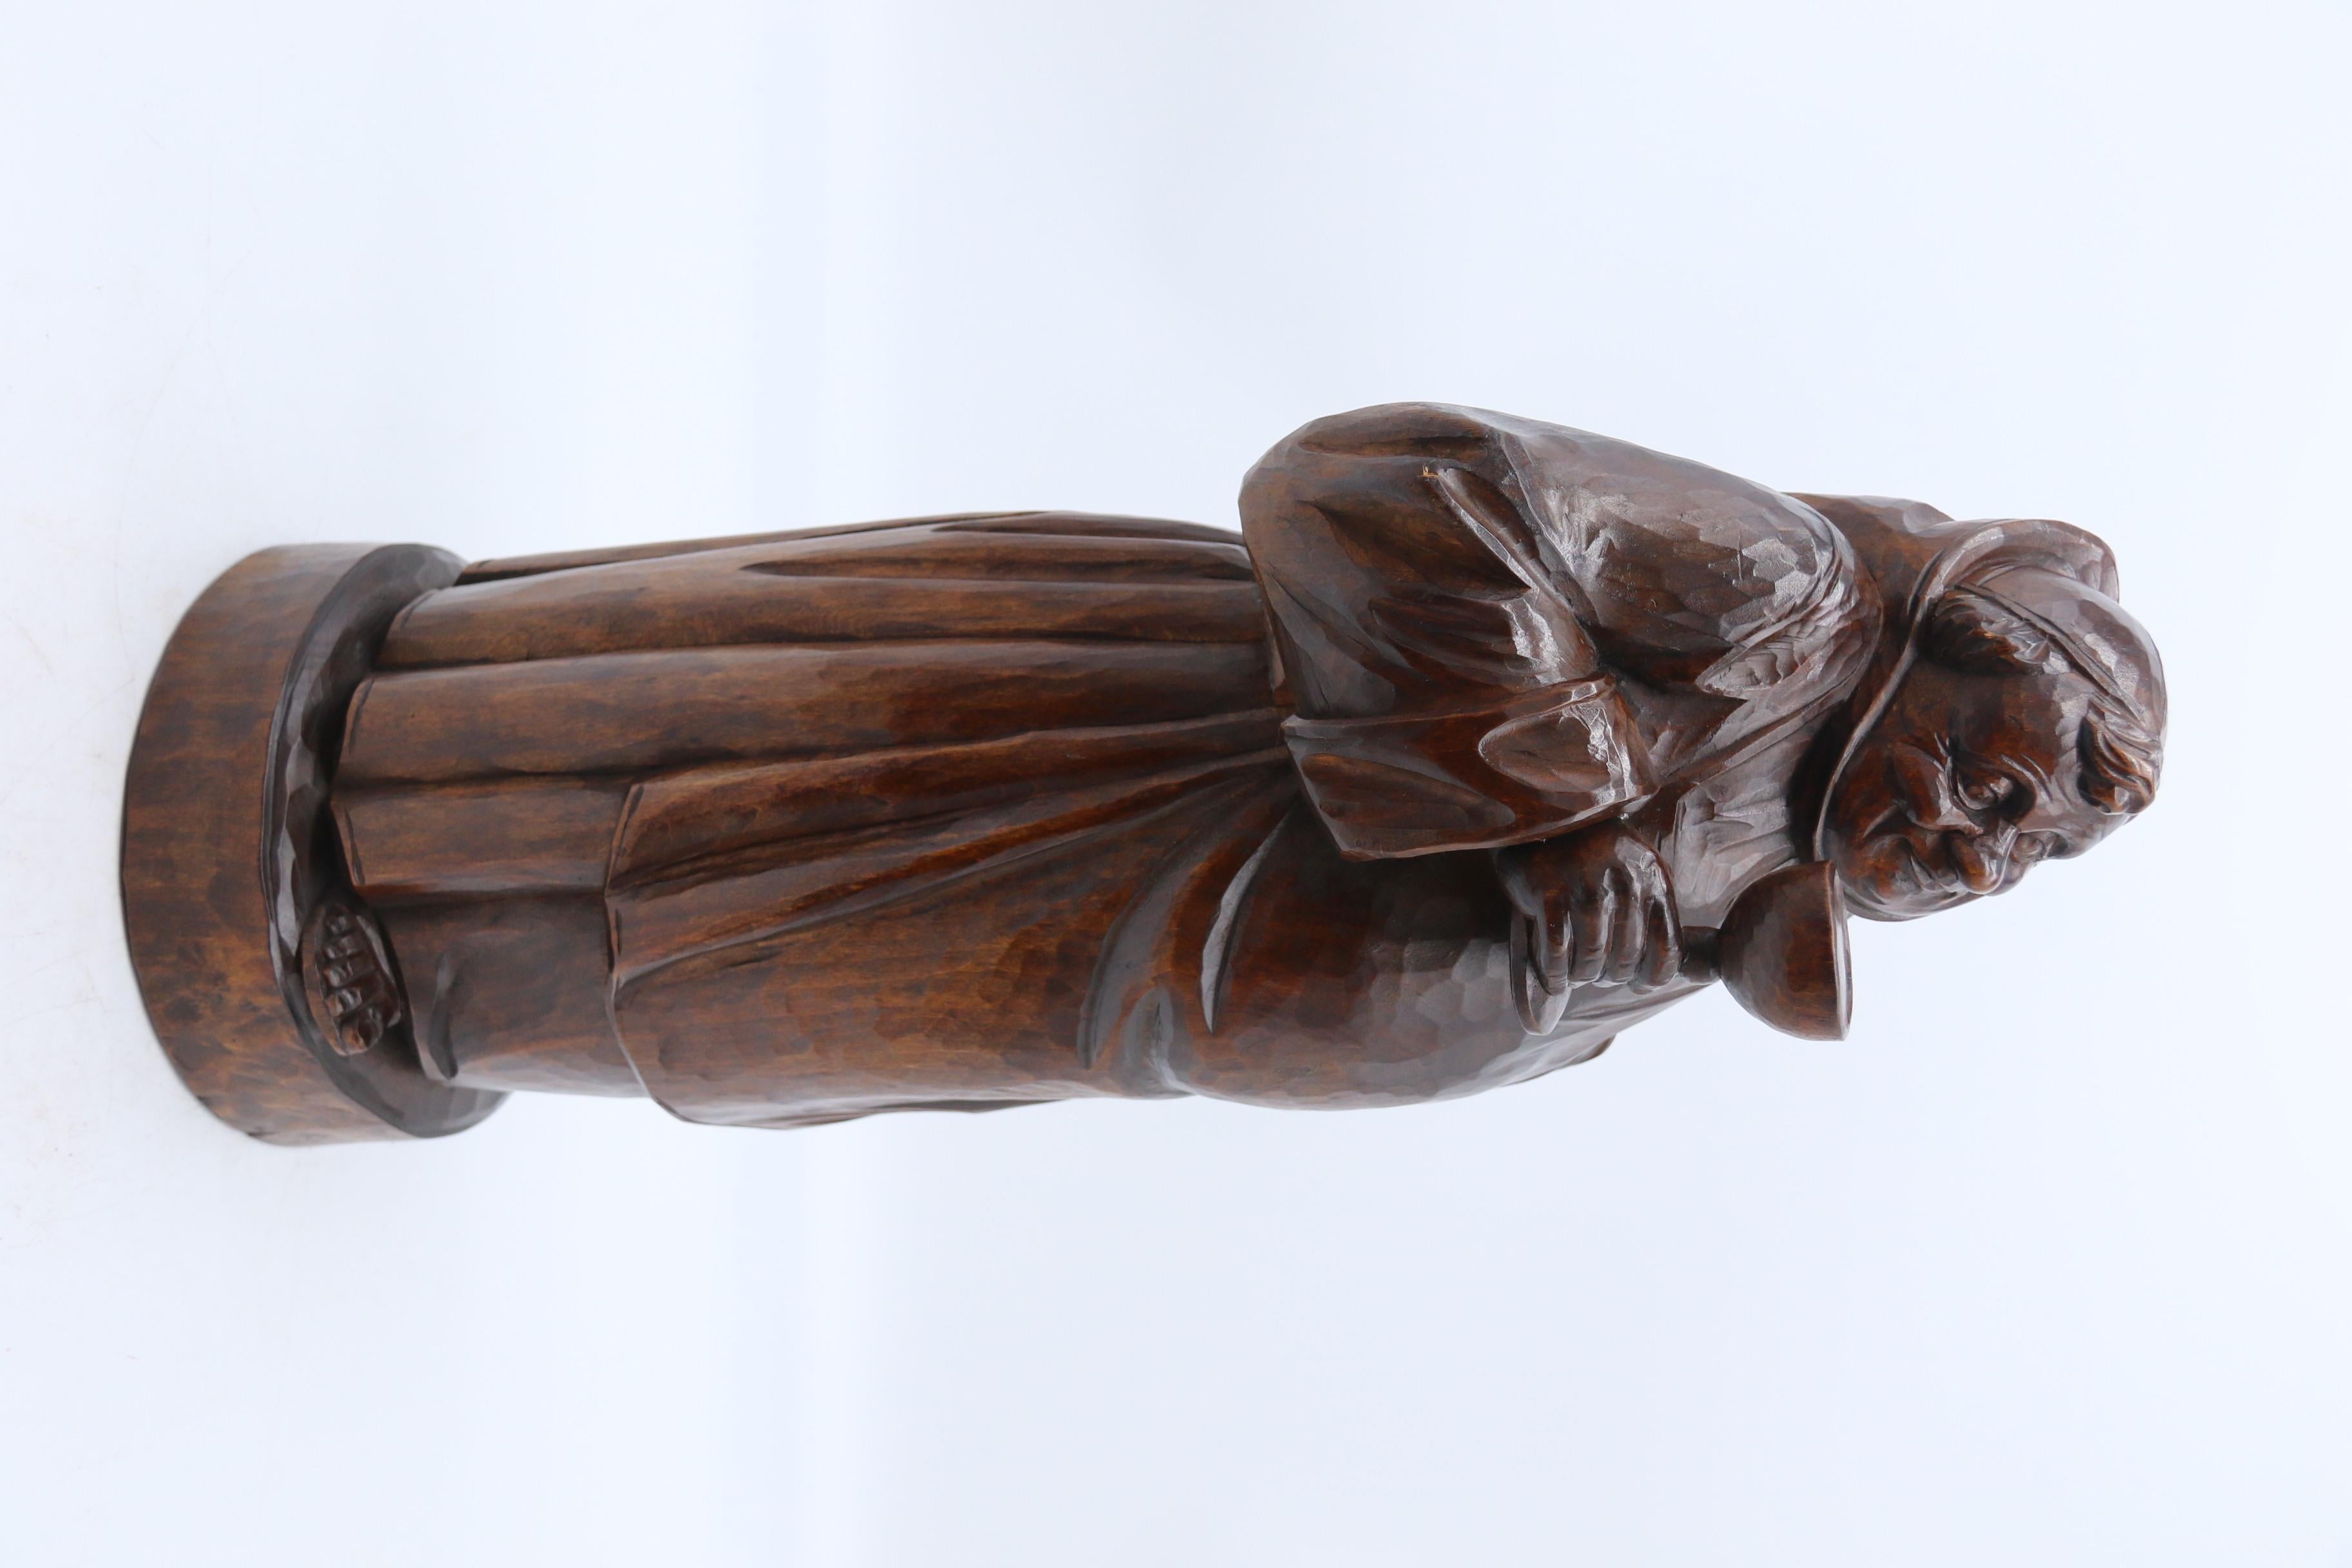 Cette impressionnante figurine de grande taille en bois de tilleul de la Forêt-Noire est magnifiquement sculptée et représente un moine corpulent, vêtu d'un simple habit, qui déguste gaiement un grand gobelet de vin ou peut-être plusieurs à en juger